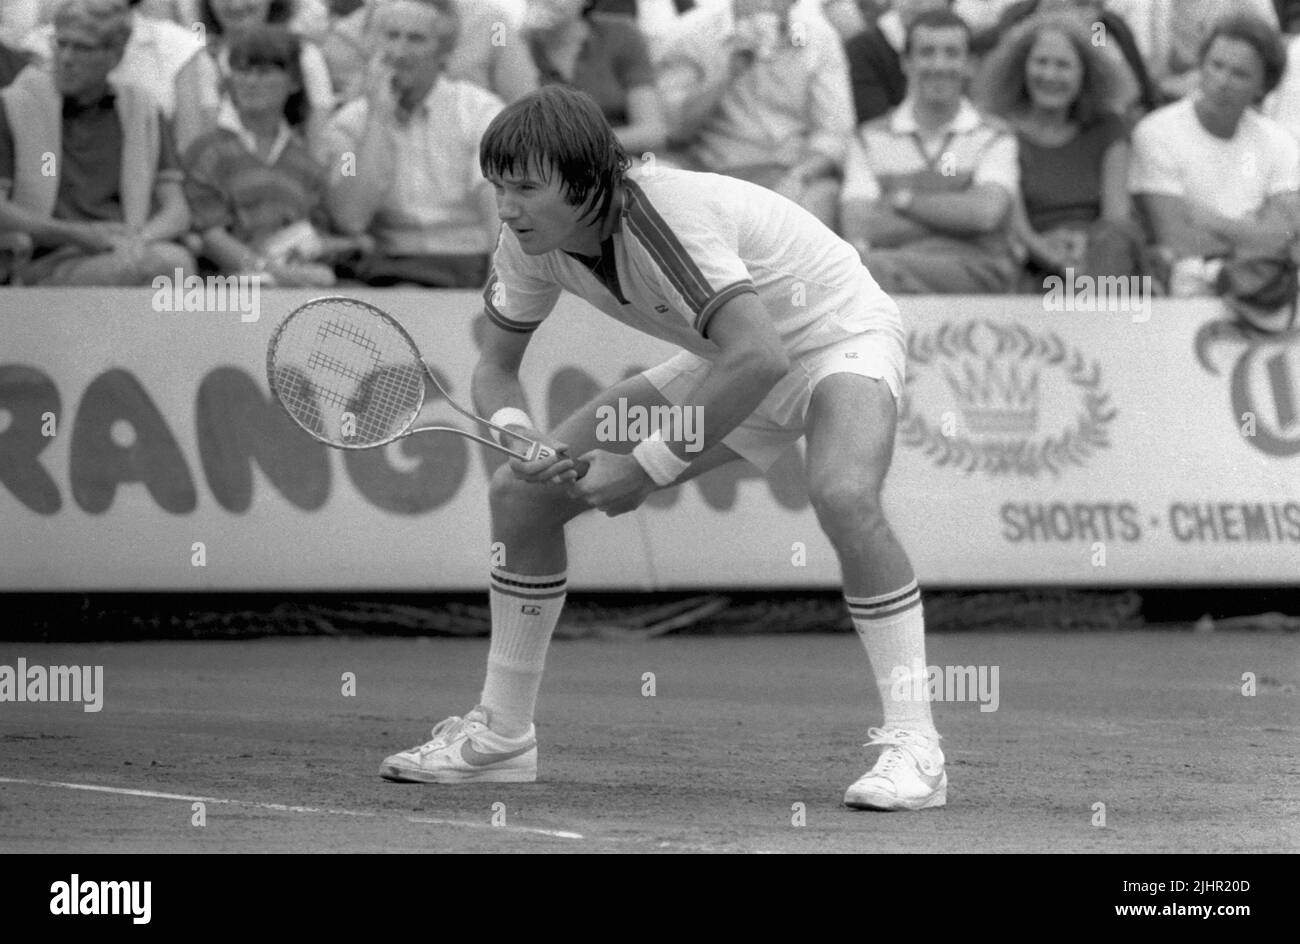 Le joueur américain de tennis Jimmy Connors, participant à la demi-finale masculine de l'Open de France (contre Paraguayan Victor Pecci). Paris, stade Roland-Garros, juin 1979 Banque D'Images